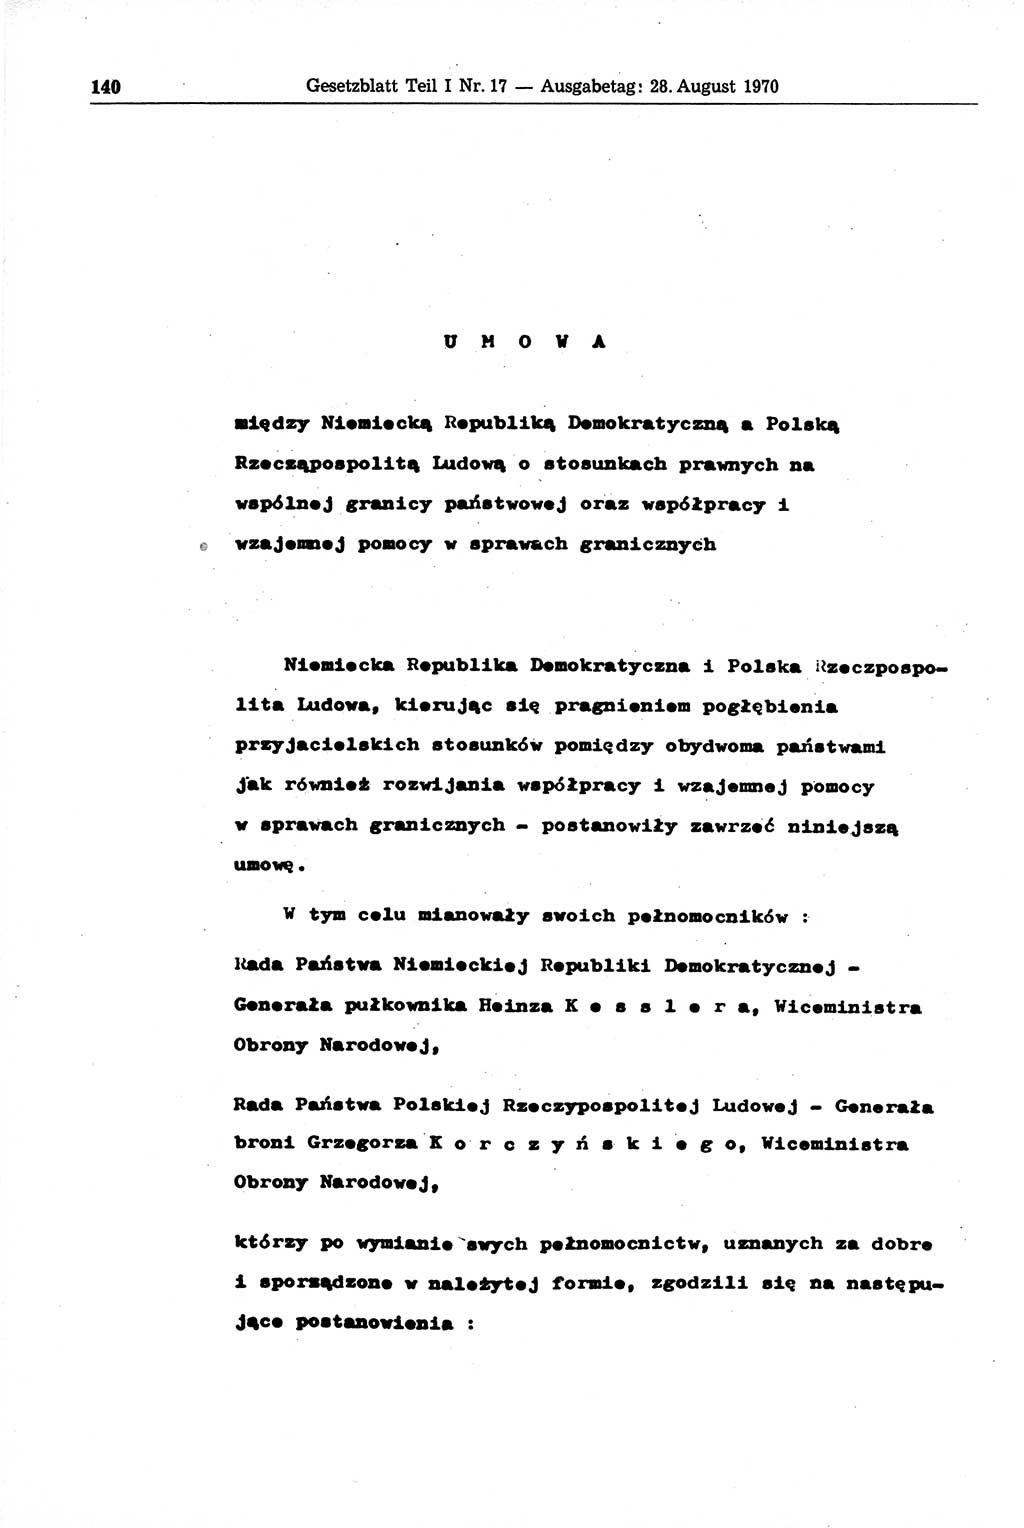 Gesetzblatt (GBl.) der Deutschen Demokratischen Republik (DDR) Teil Ⅰ 1970, Seite 140 (GBl. DDR Ⅰ 1970, S. 140)